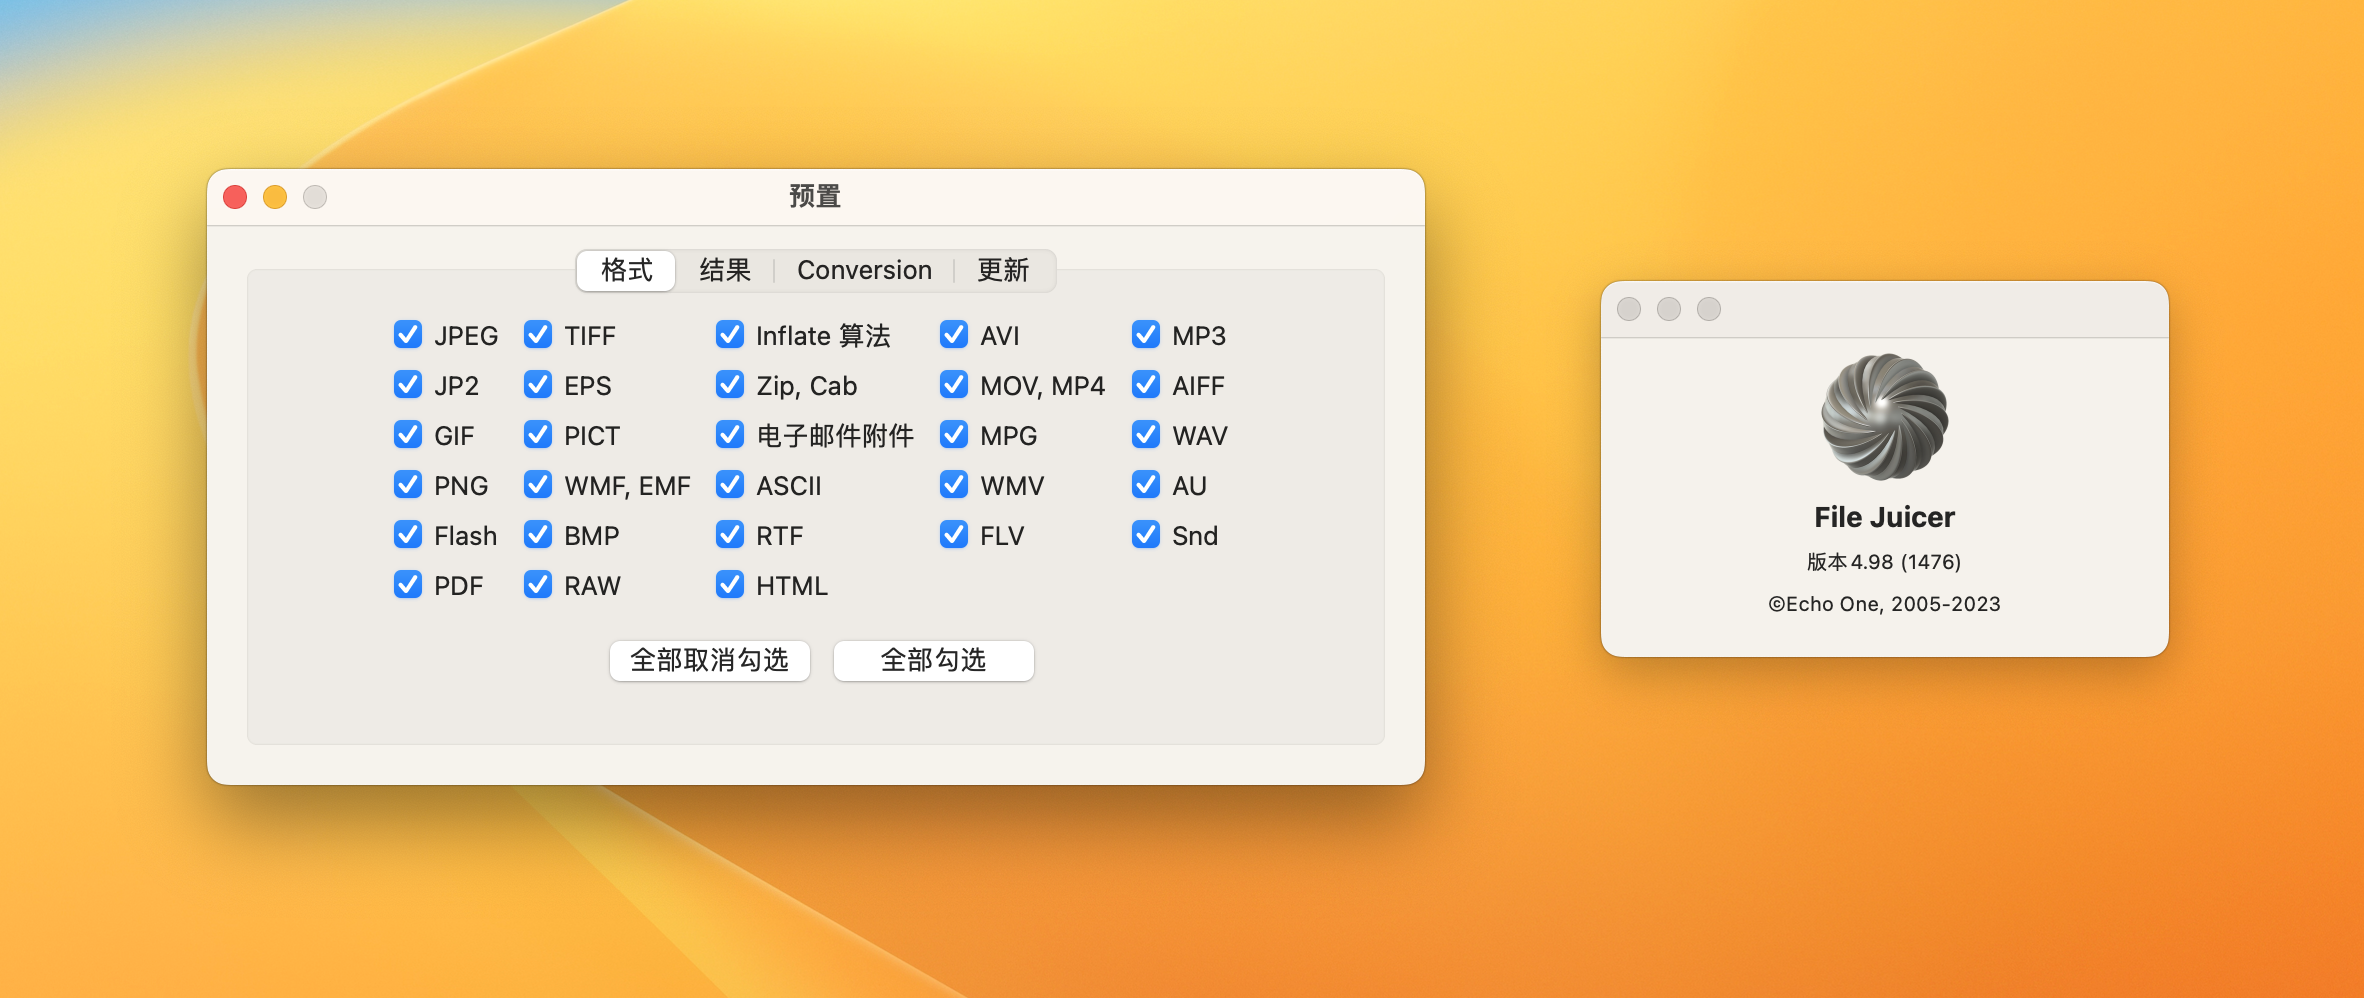 File Juicer for Mac v4.98(1476) 中文破解版 文件内容提取工具